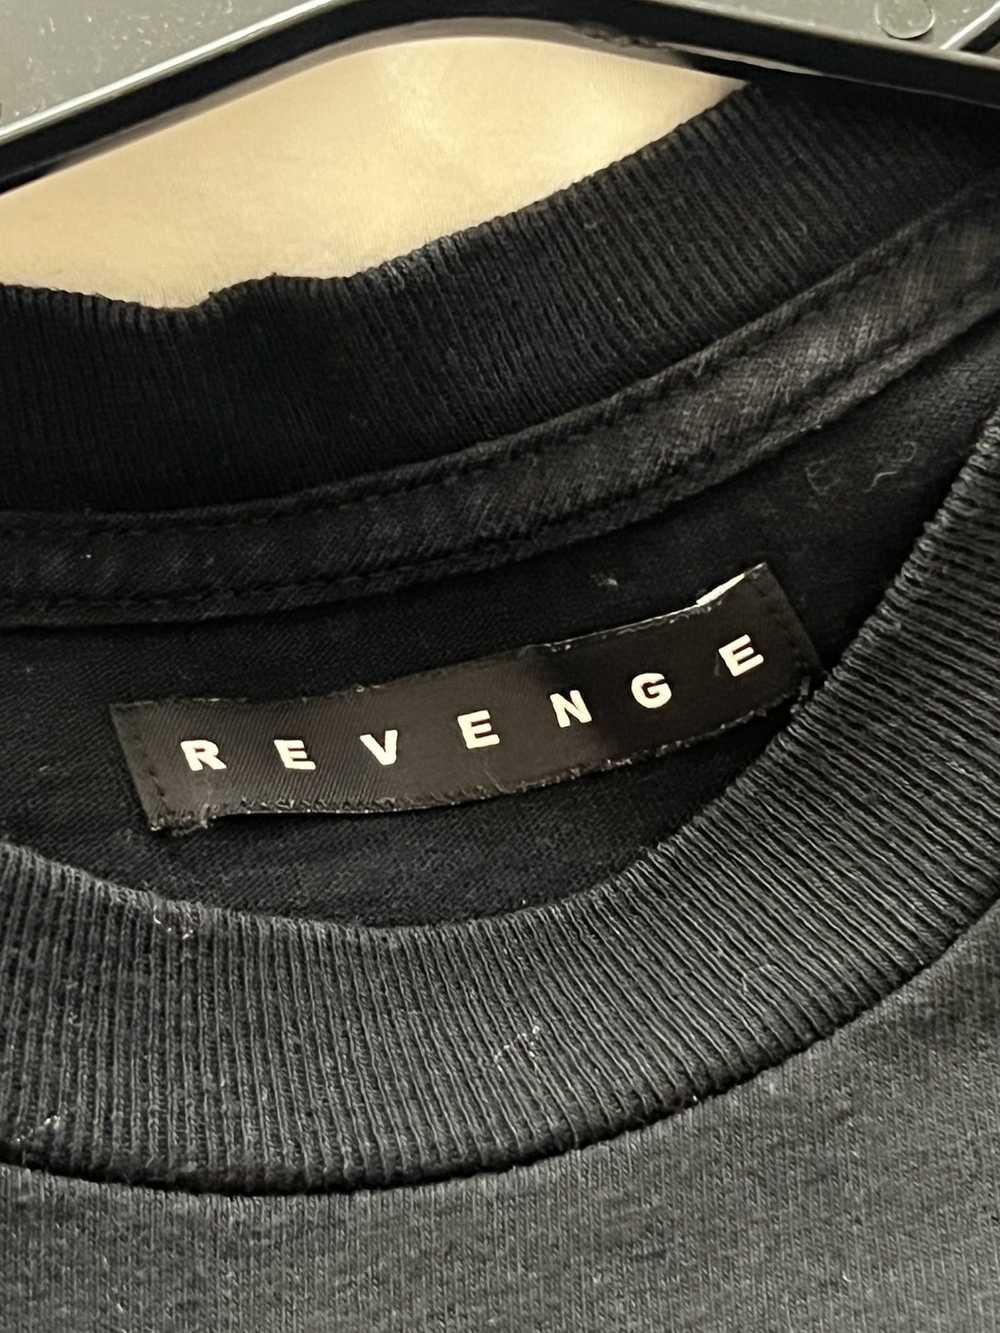 Revenge Revenge - image 6